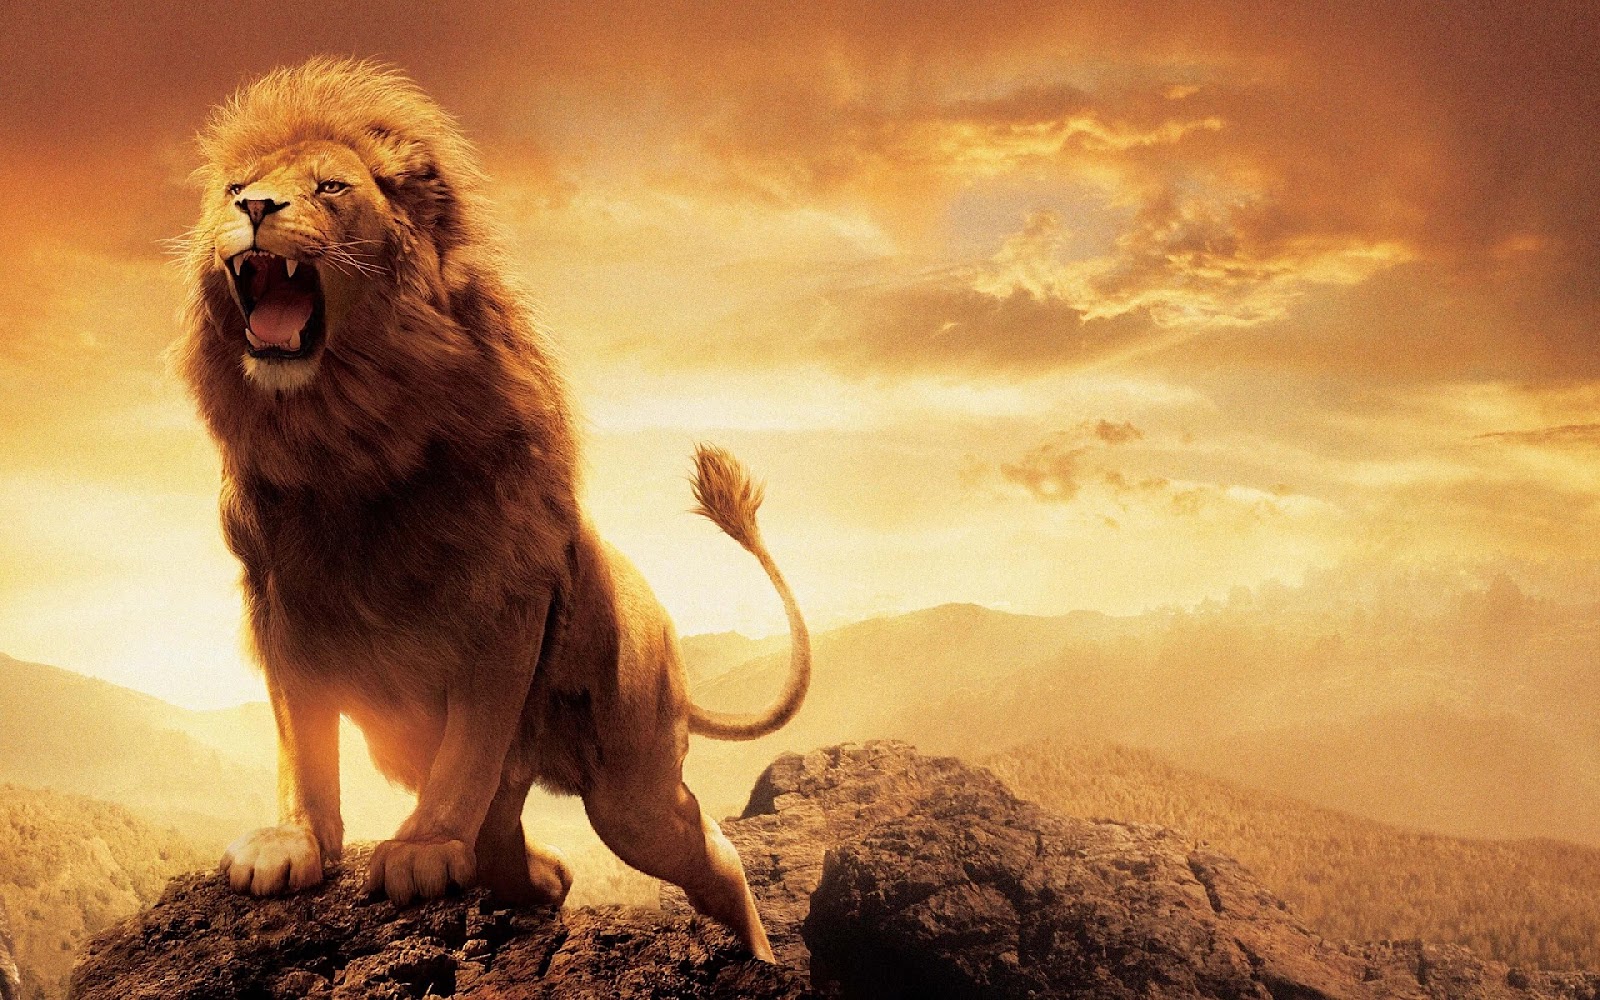 Nằm mơ thấy con sư tử đánh con gì phát tài?